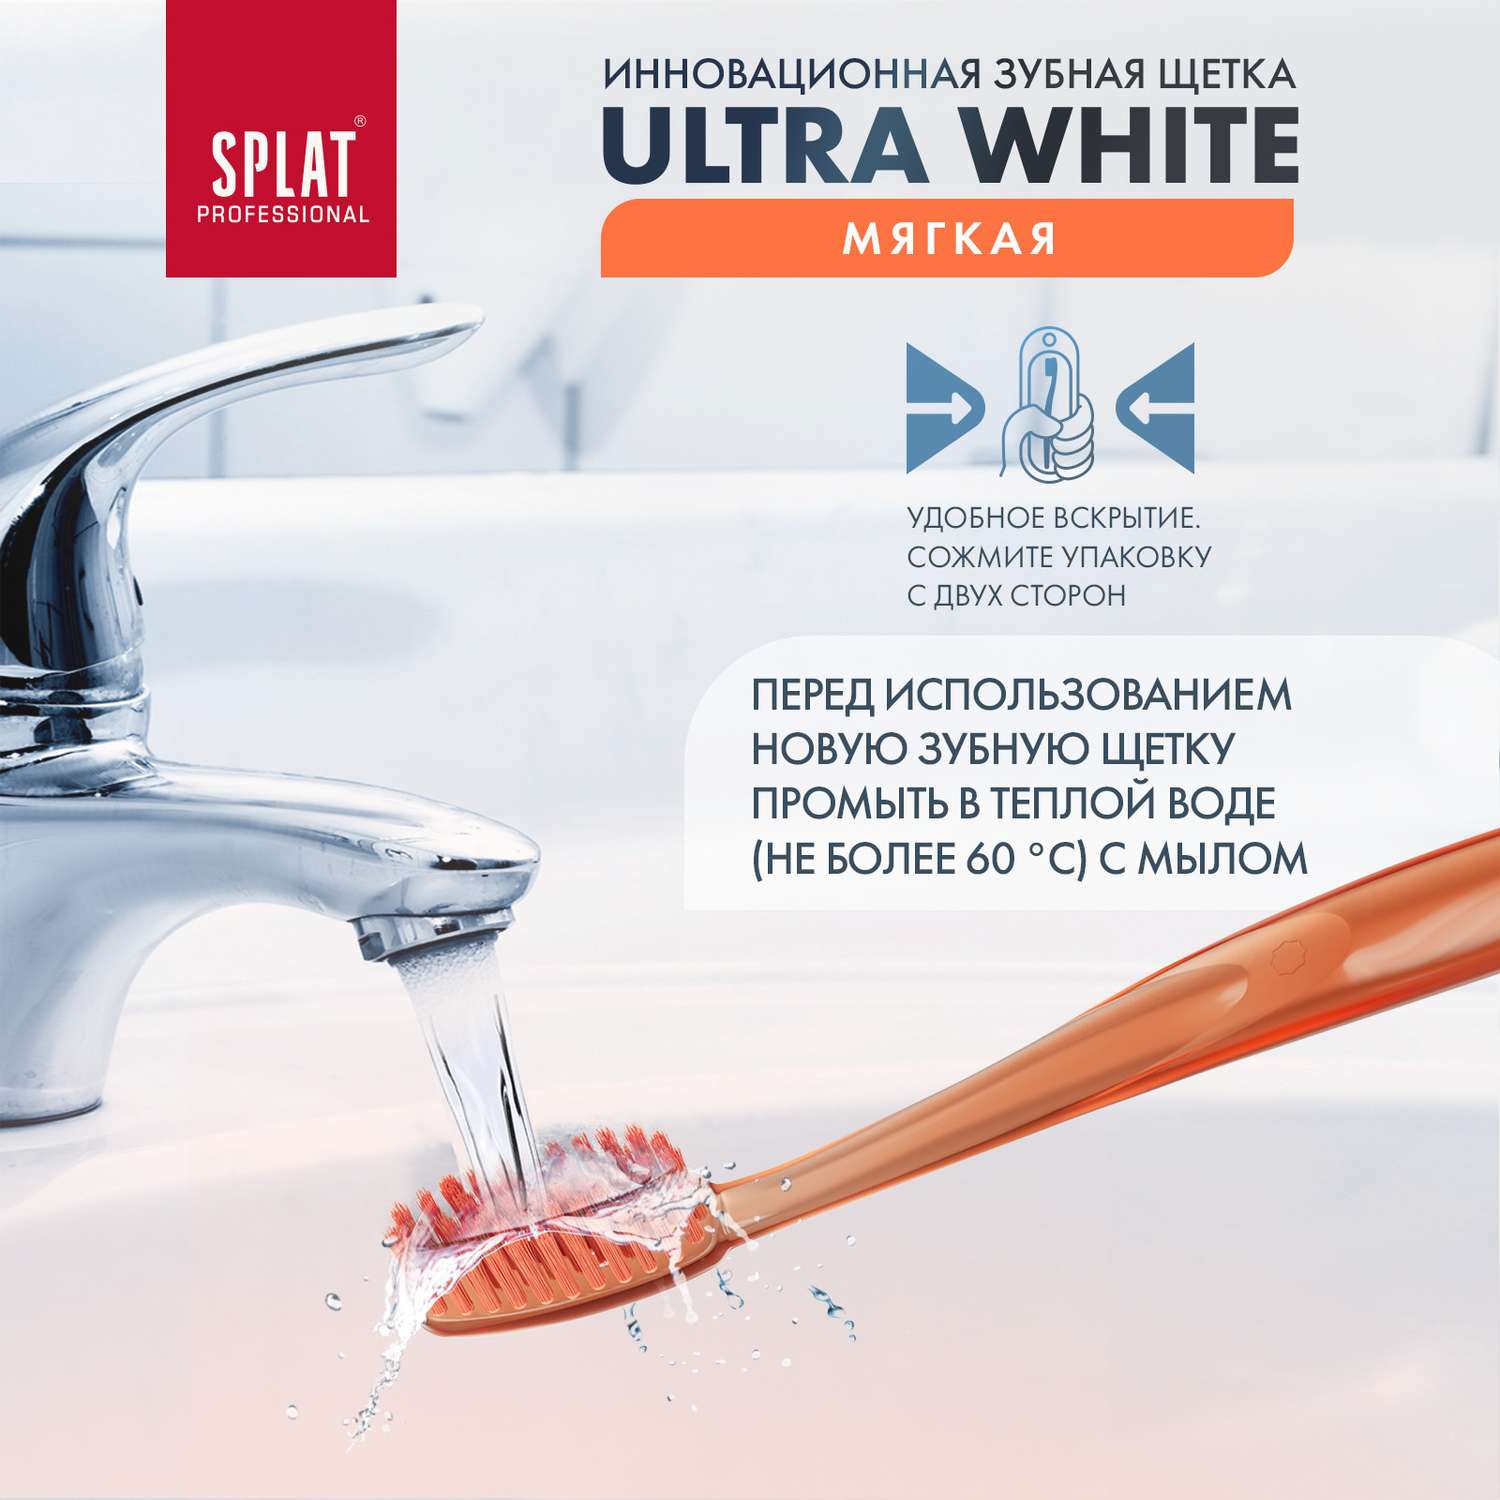 Зубная щетка Splat мягкая Ultra White Ультра Уайт 2 шт - фото 4